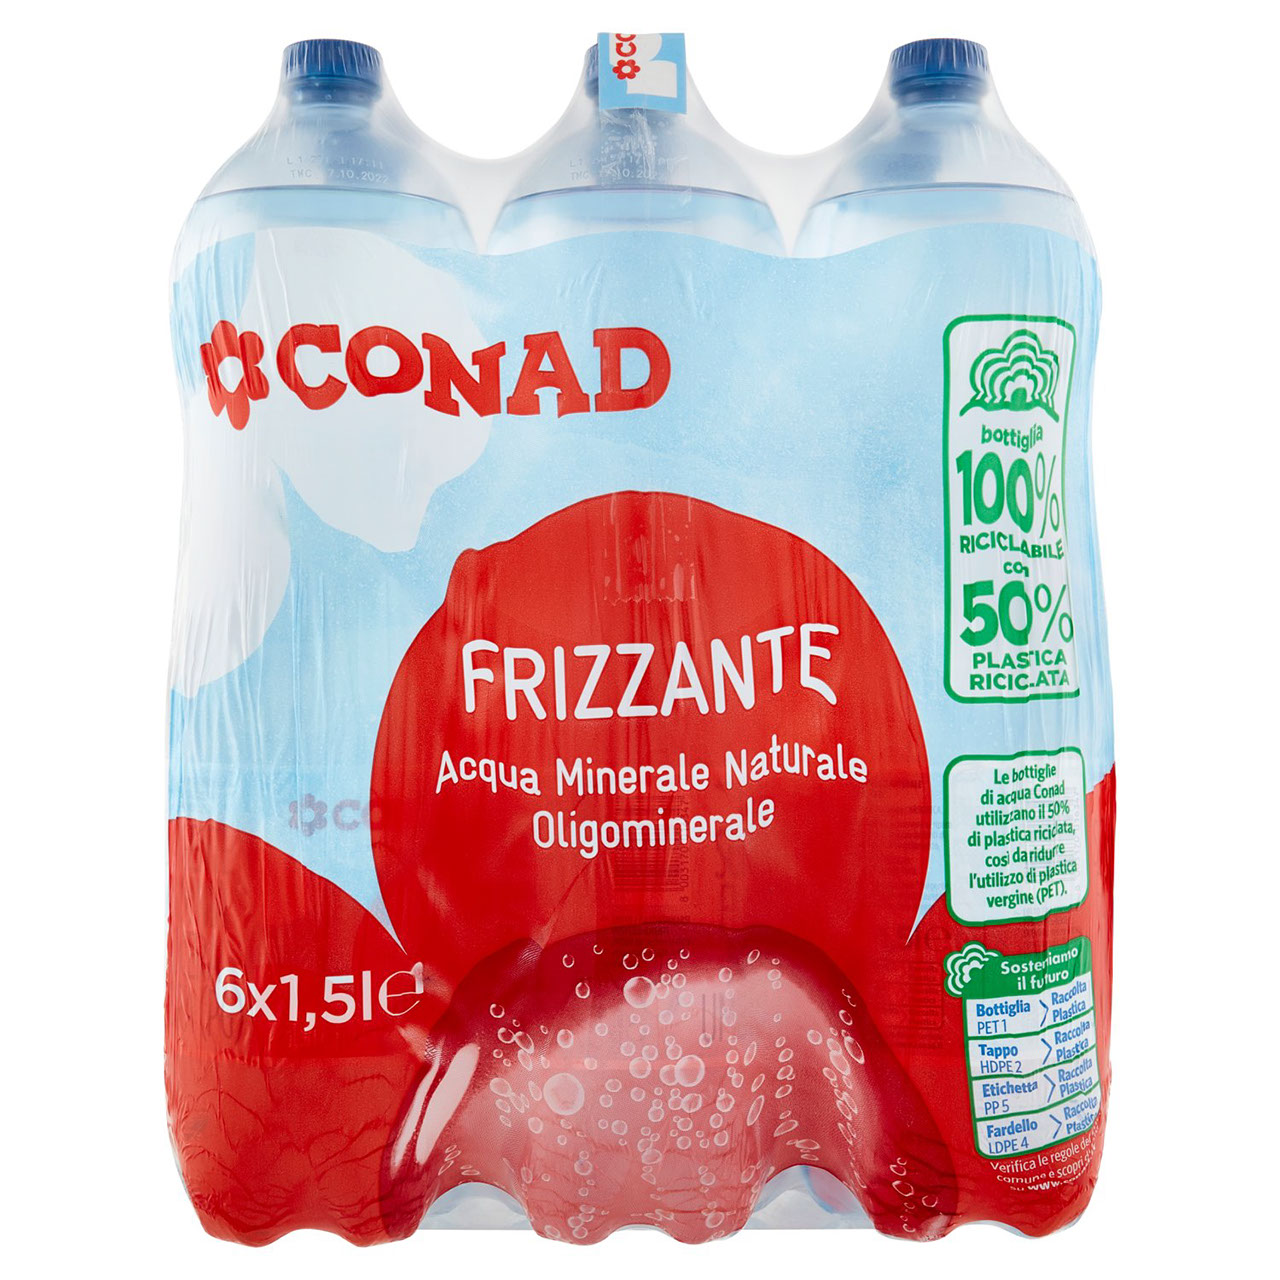 Acqua Minerale Frizzante Conad in vendita online